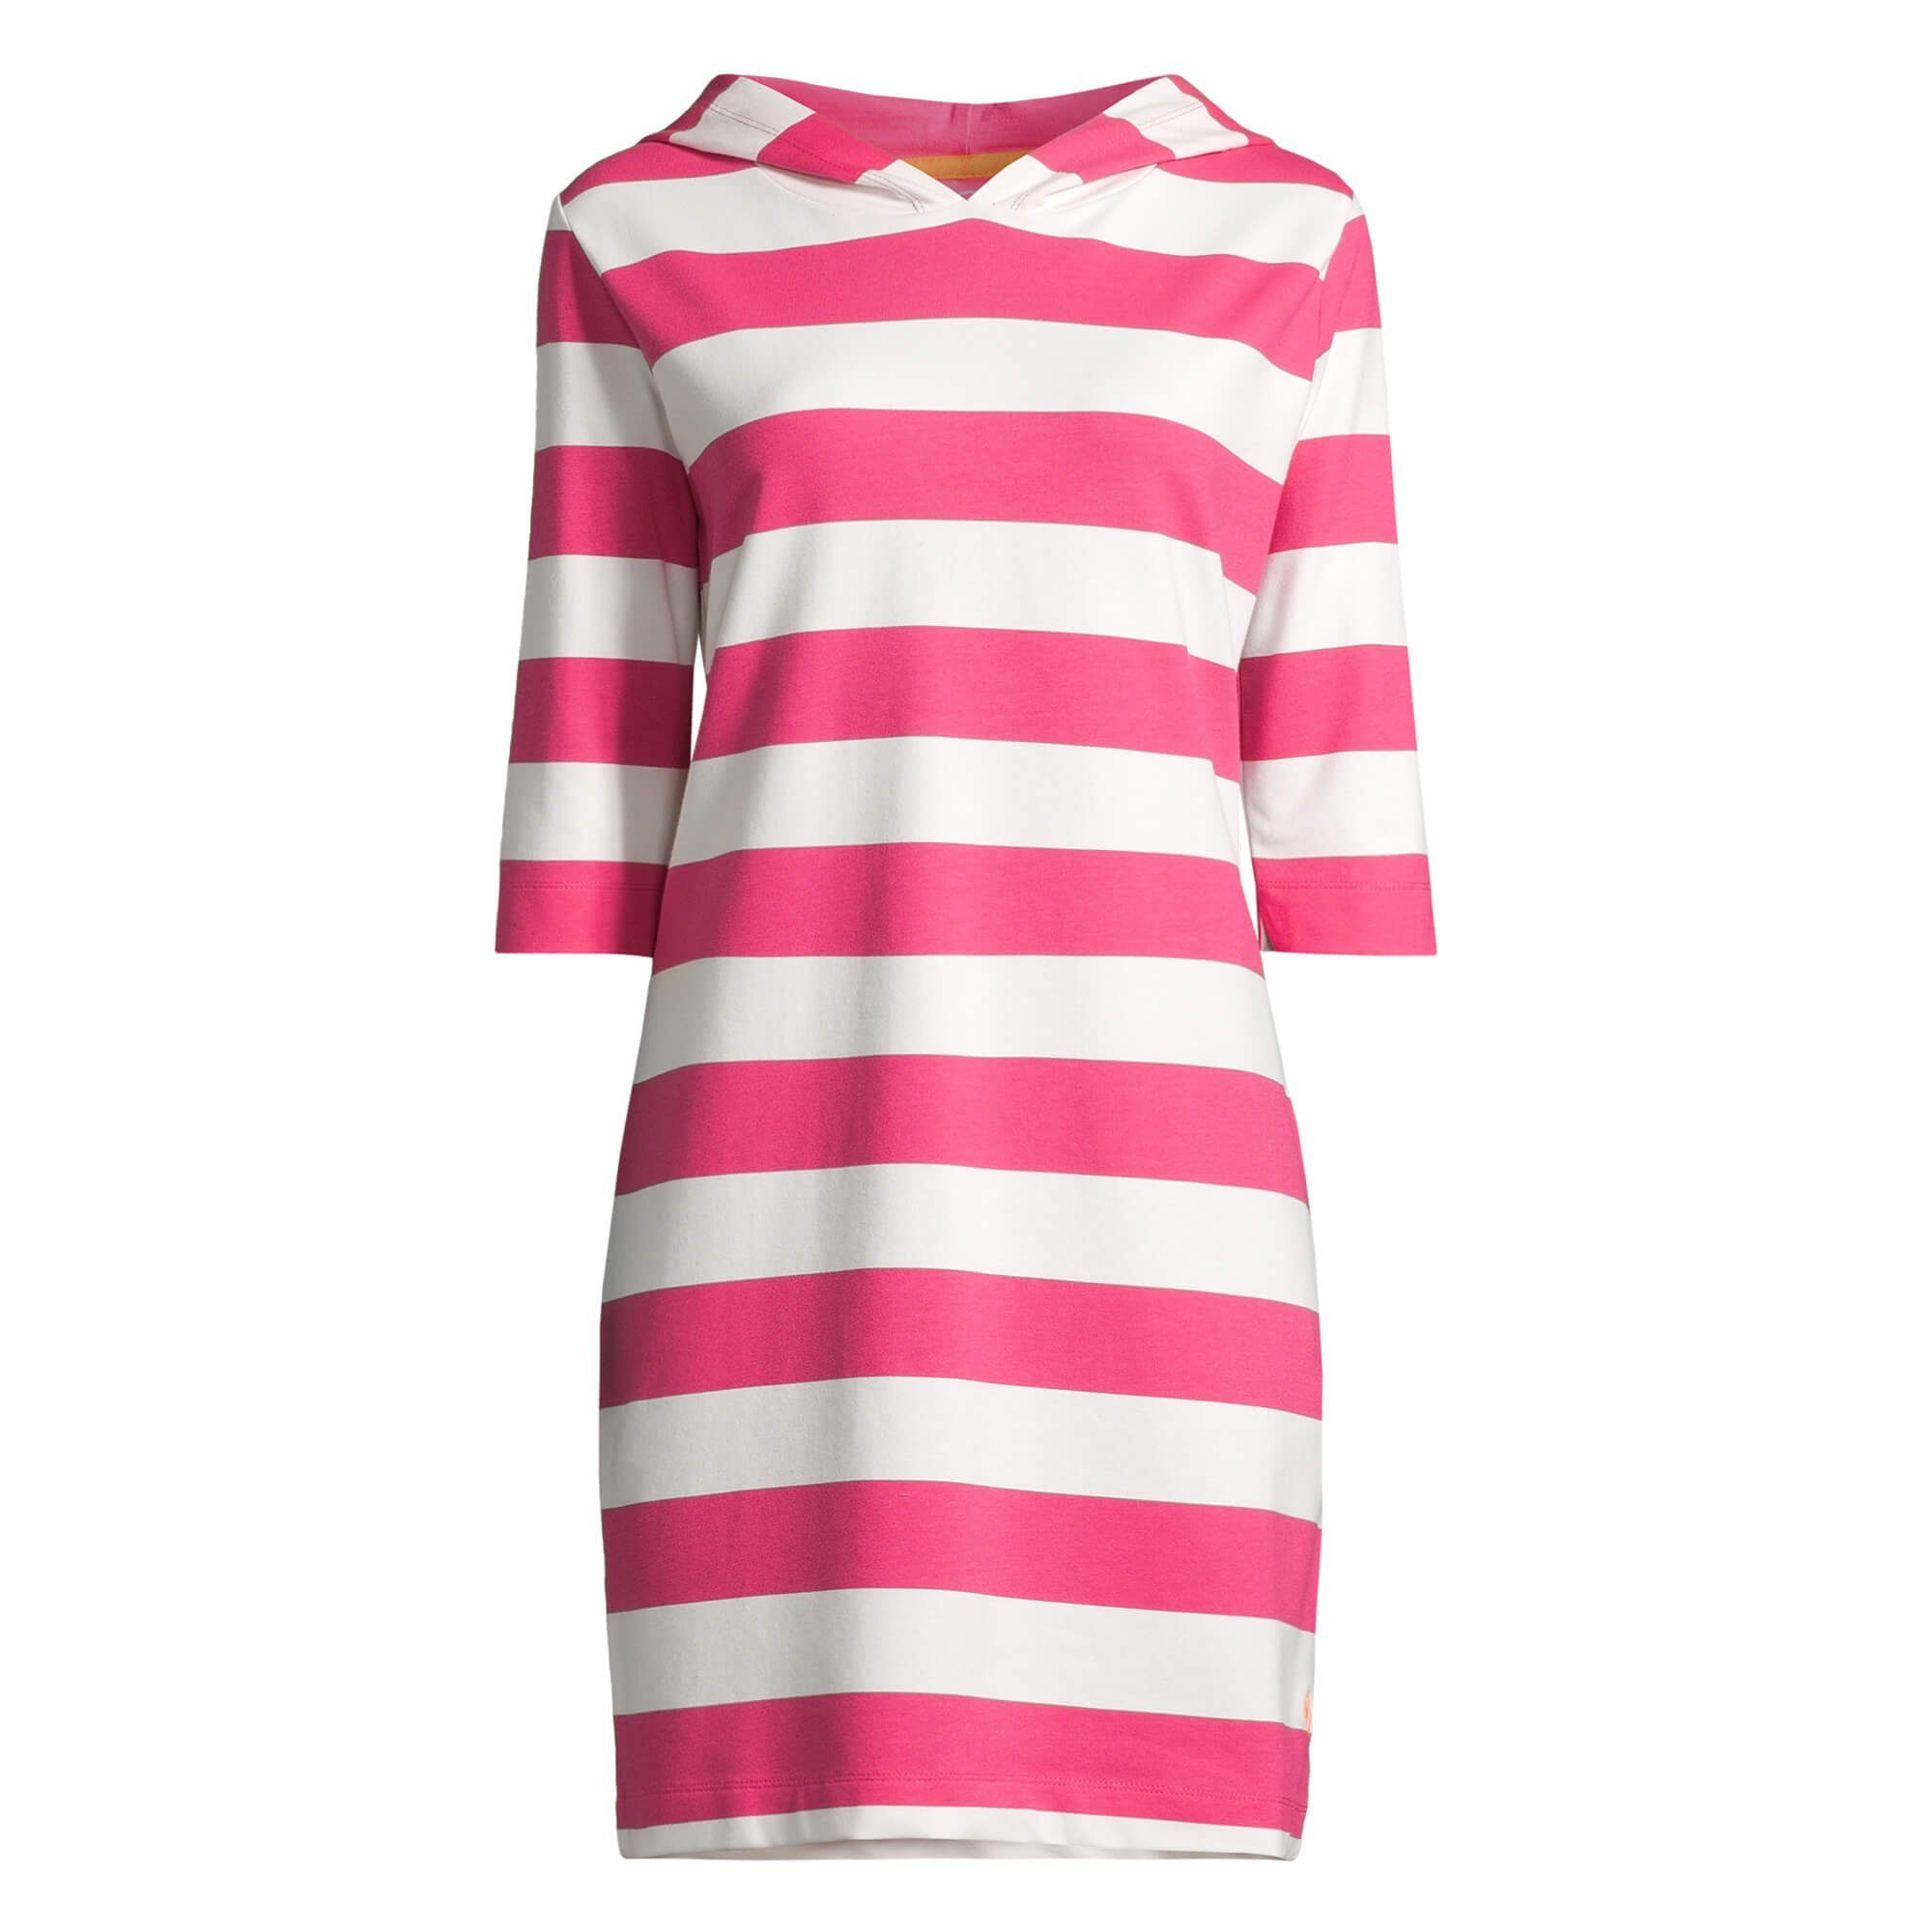 salzhaut Shirtkleid Damen Hoodie-Kleid Kapuzenkleid Löövstick Block-Streifen 3/4-Arm offwhite / pink